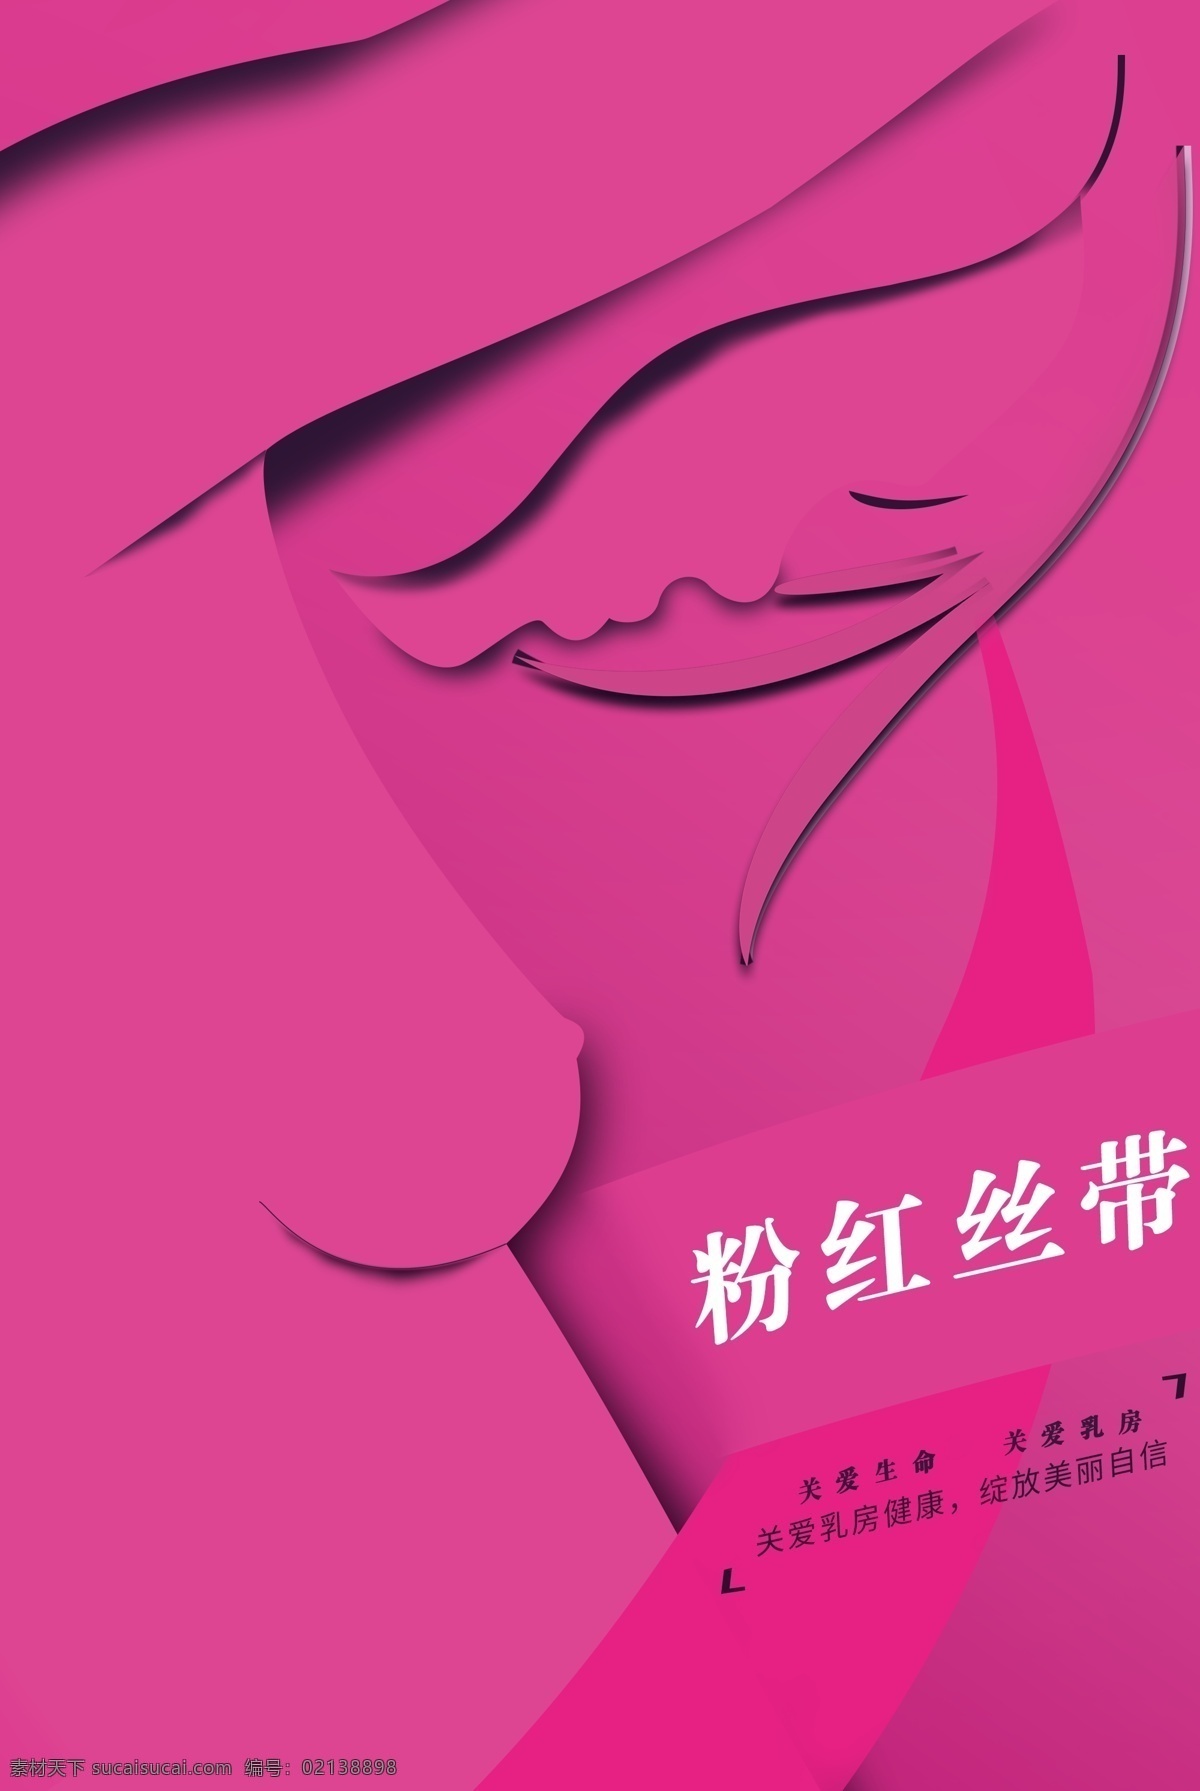 关爱健康 粉红丝带 关爱乳房健康 女性健康 呵护乳房 呵护健康 粉红丝带海报